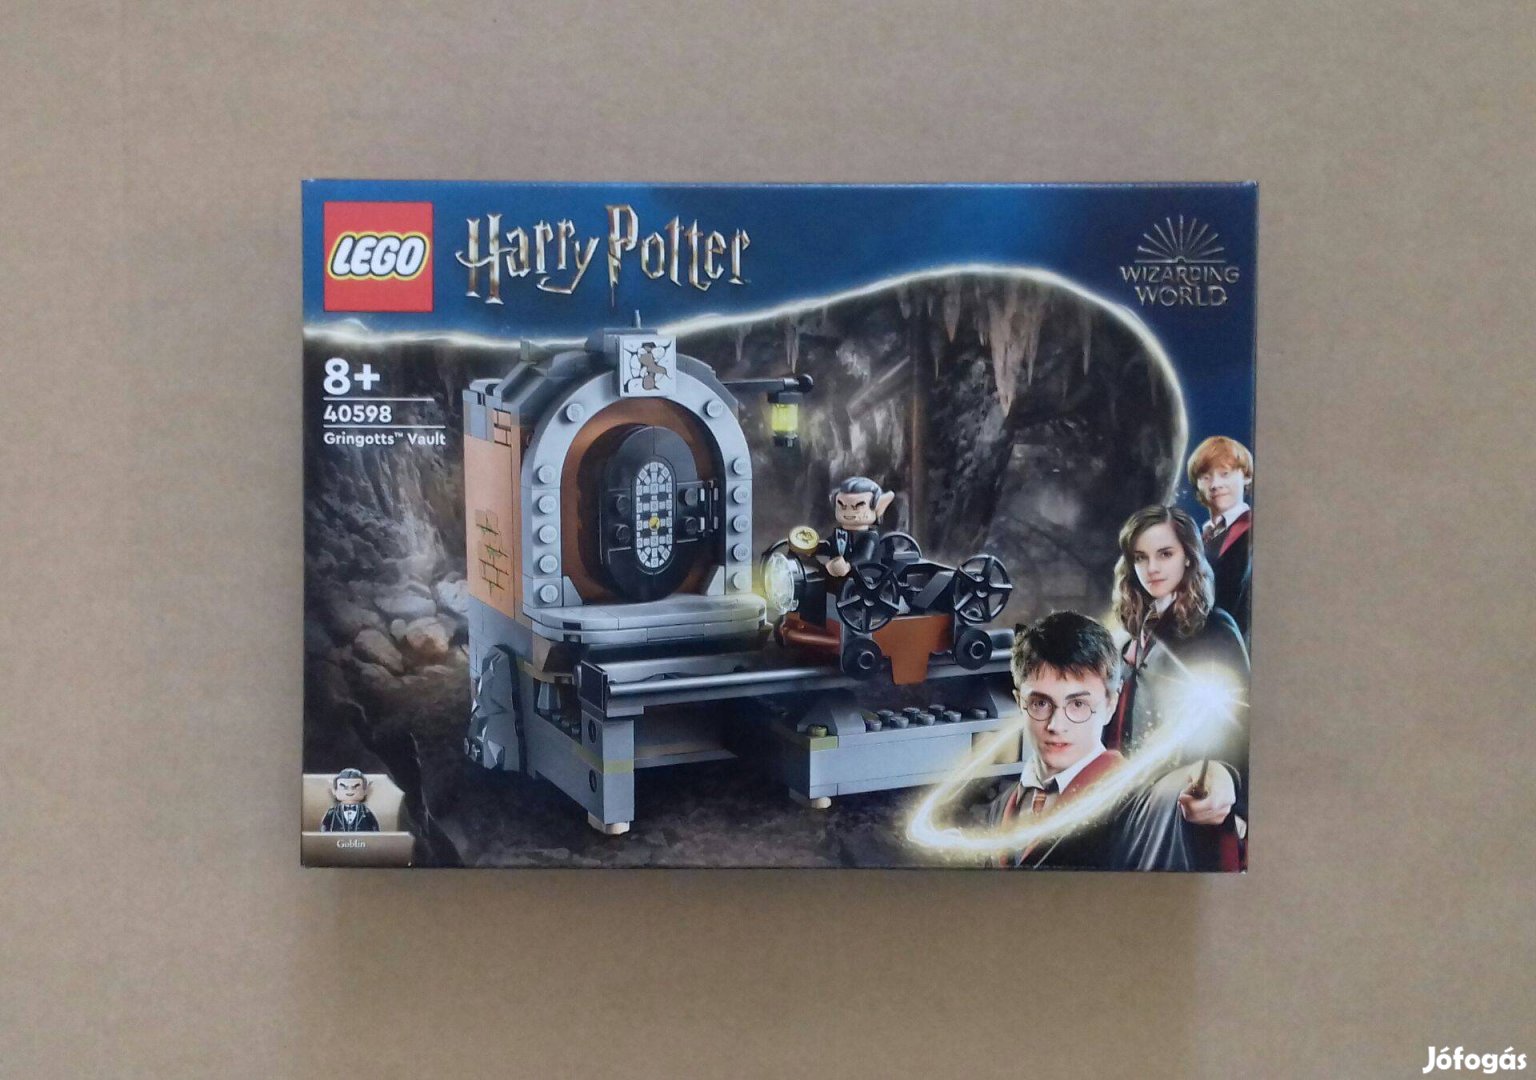 Limitált LEGO Harry Potter 40598 Gringotts széf. Foxpost utánvét árban